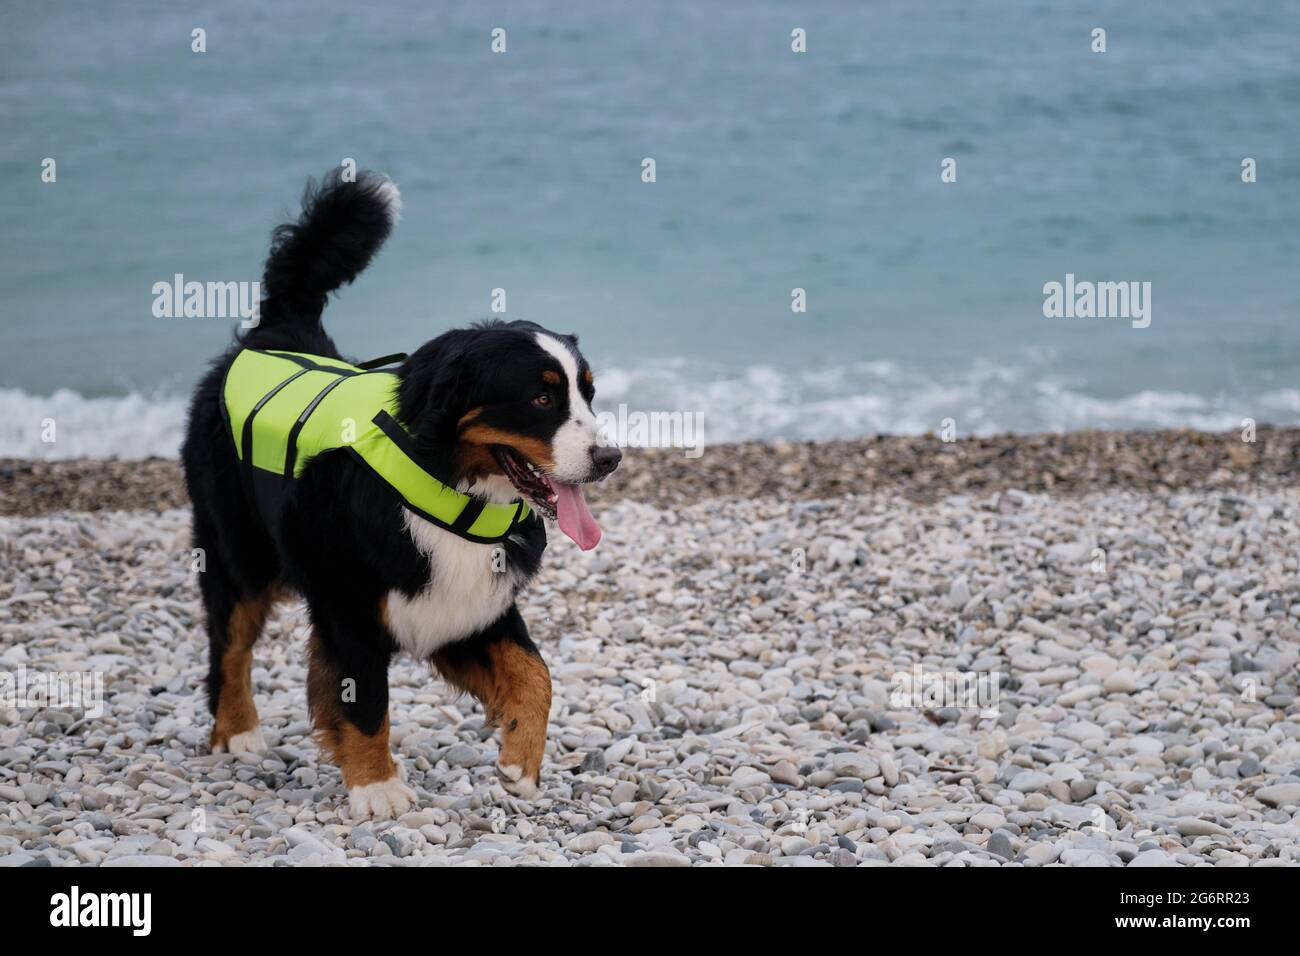 Berner Berghund in leuchtend grüner Schwimmweste auf See. Rettungshund läuft am Strand entlang und überwacht sorgfältig Ordnung und Sicherheit. Stockfoto